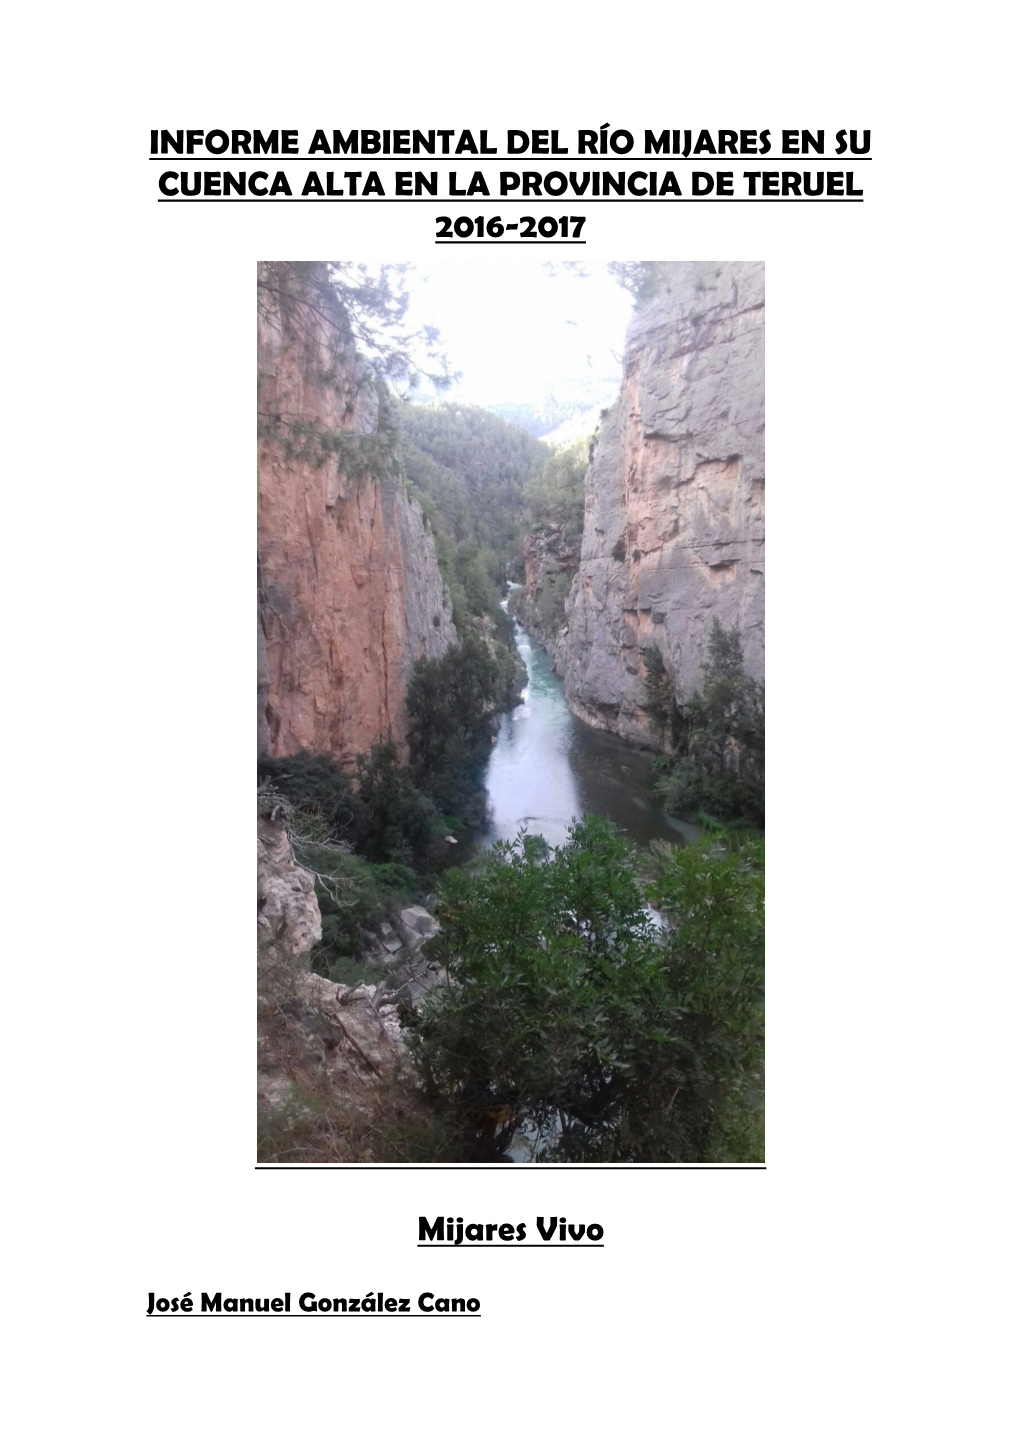 Caracteristicas De La Cuenca Del Río Mijares En La Provincia De Teruel